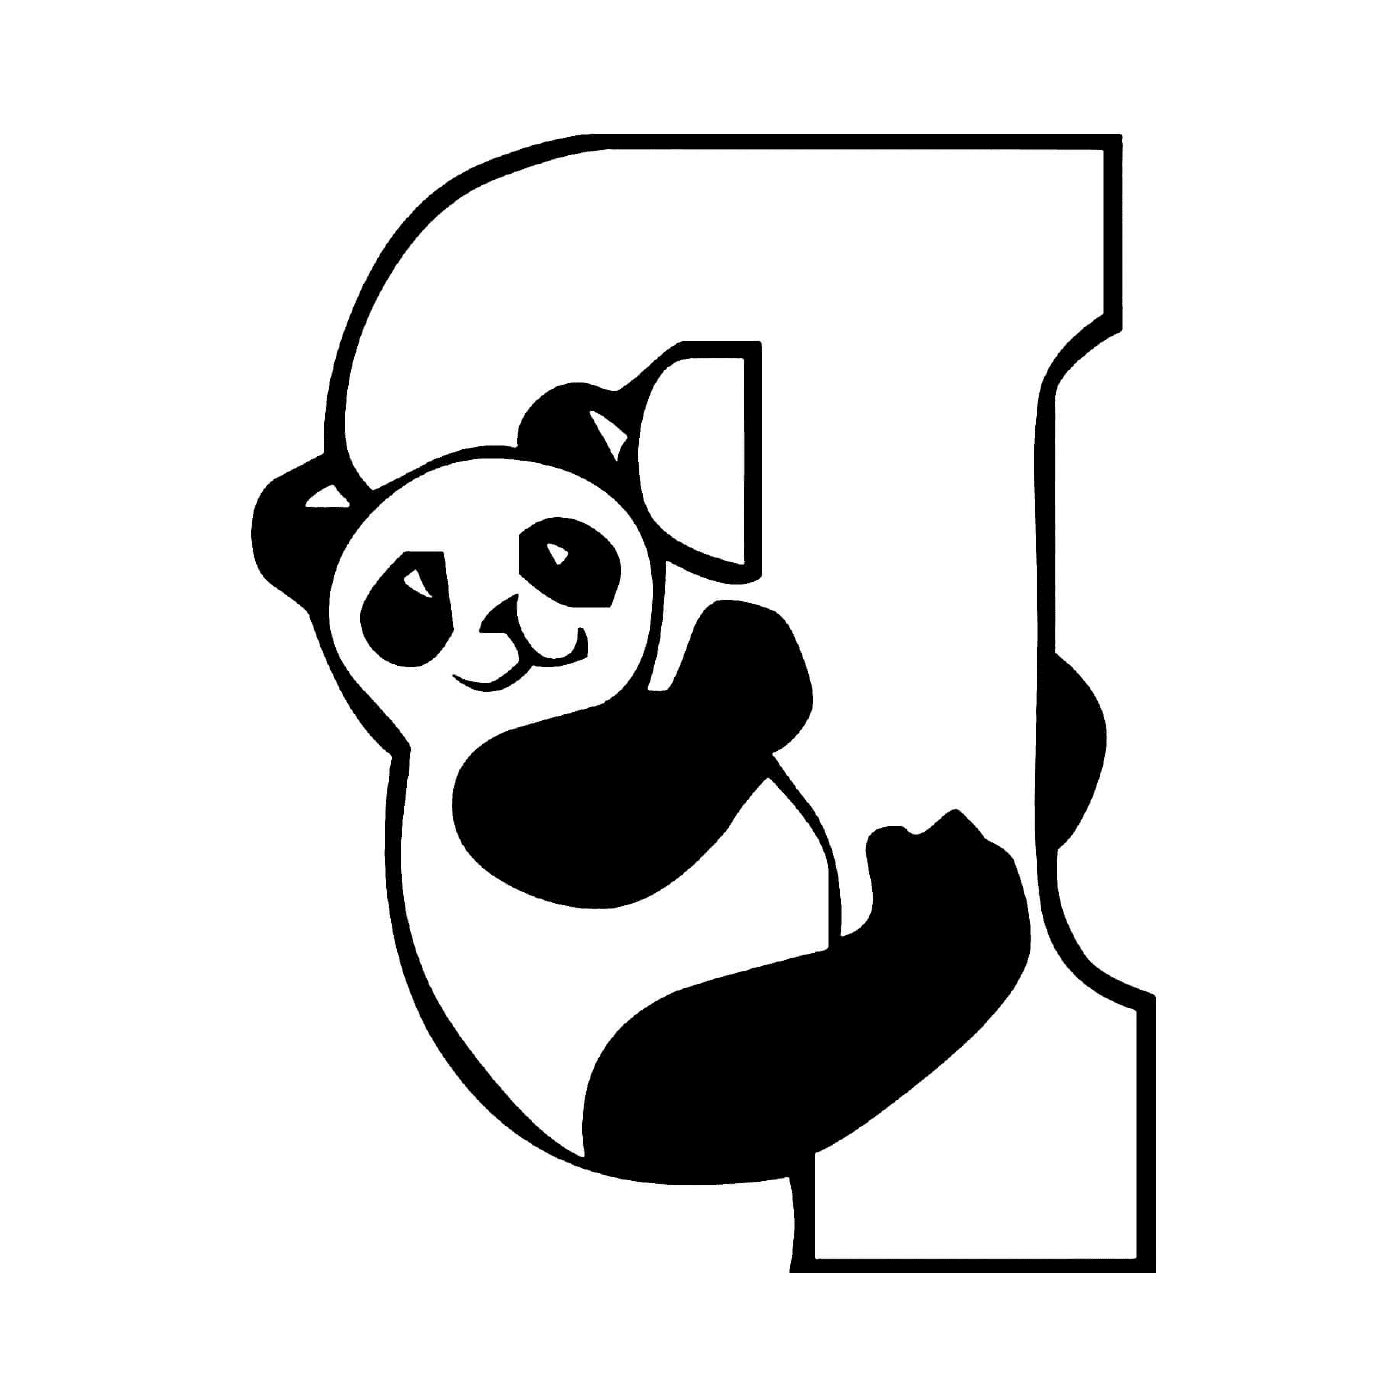  पांडा के लिए पत्र पी, बच्चों की वर्णमाला 